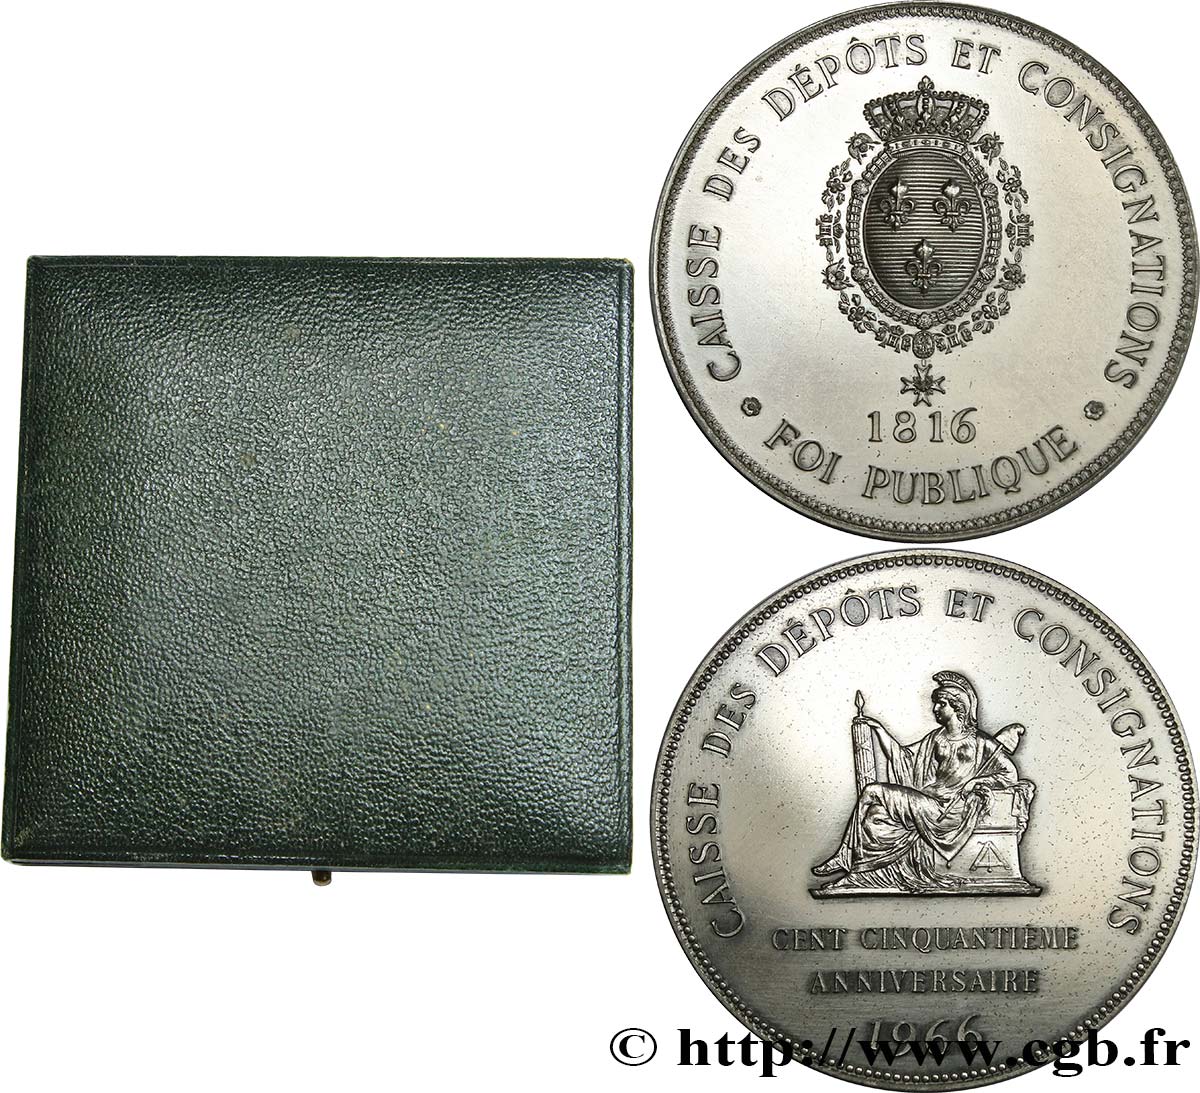 BANQUES - ÉTABLISSEMENTS DE CRÉDIT Médaille, 150e anniversaire de la Caisse des Dépôts et consignations EBC